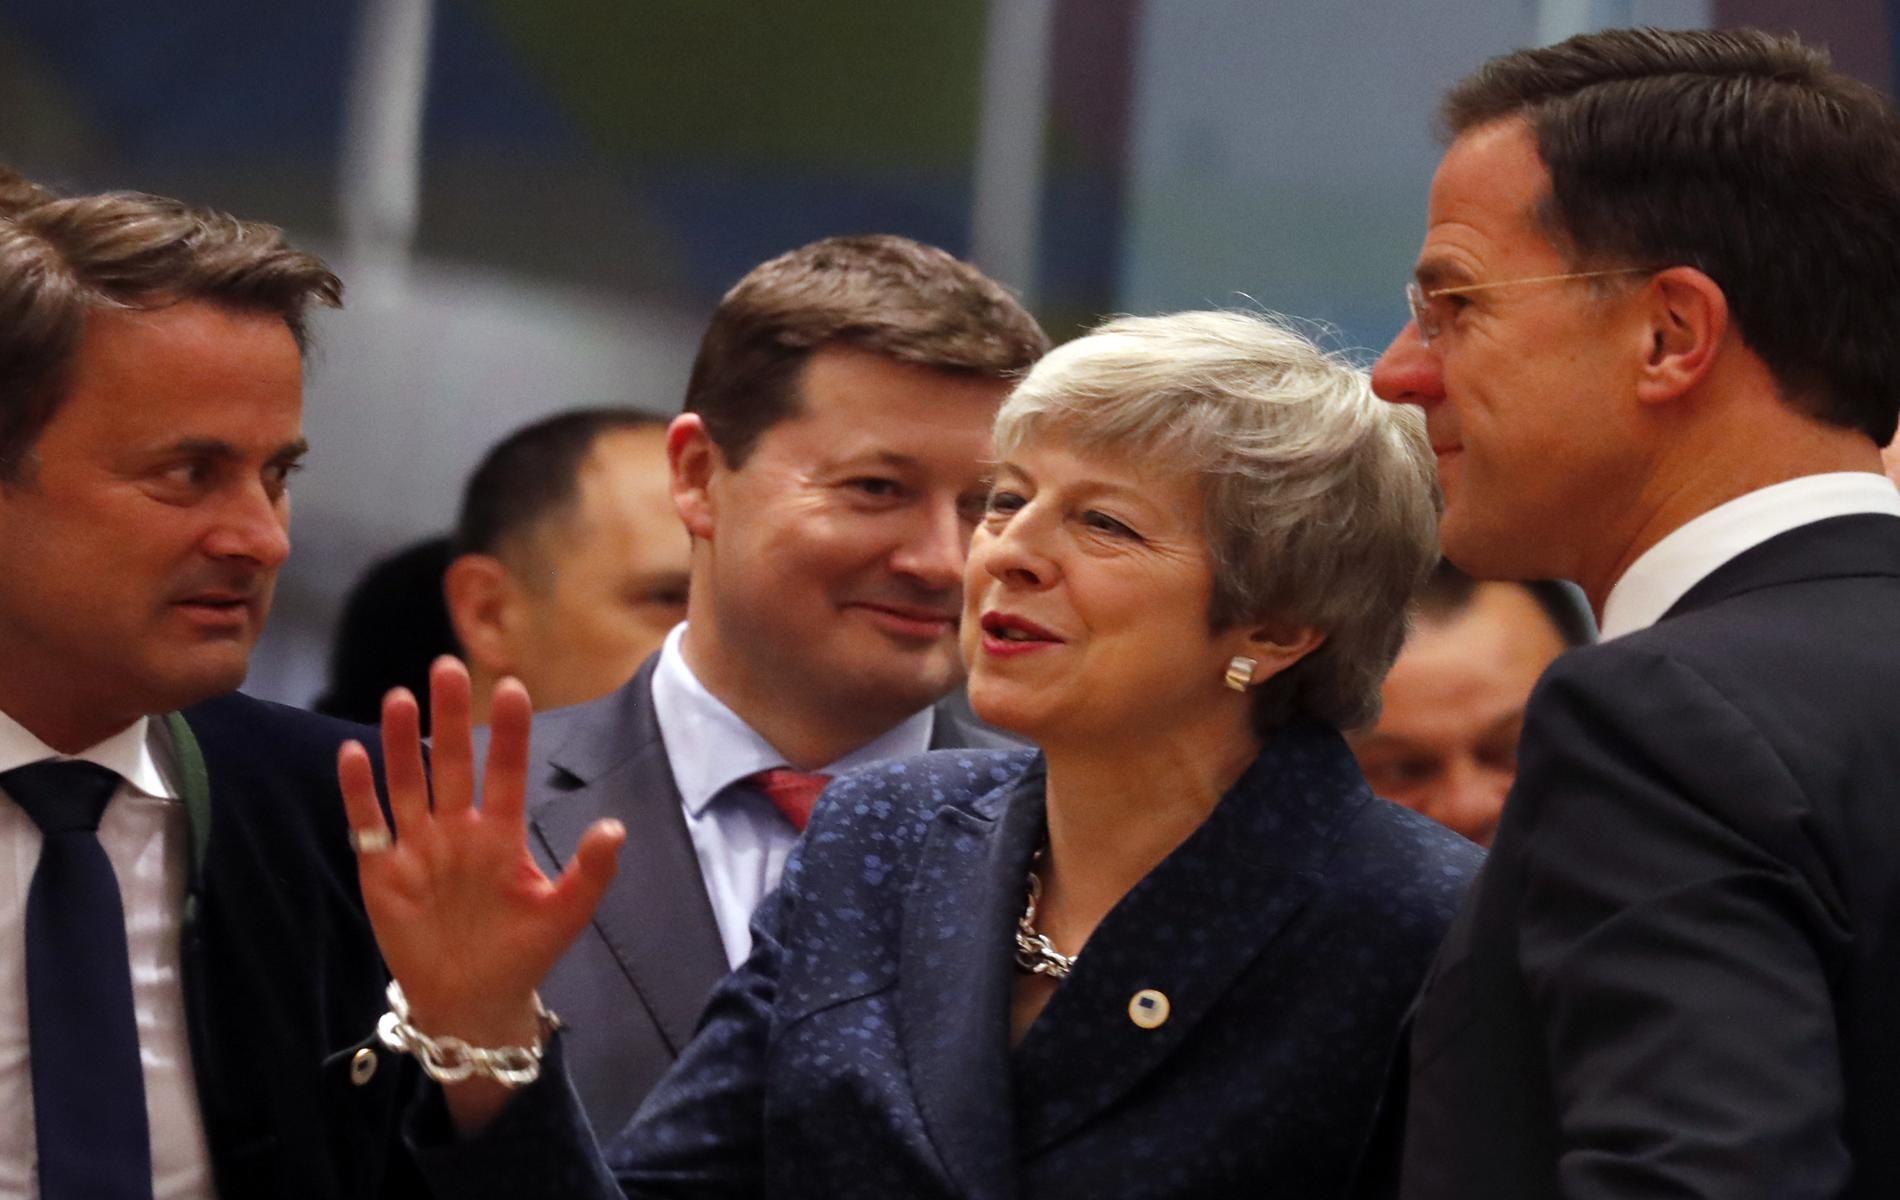 Европейските лидери обсъждаха Брекзит  на дълго заседание вчера